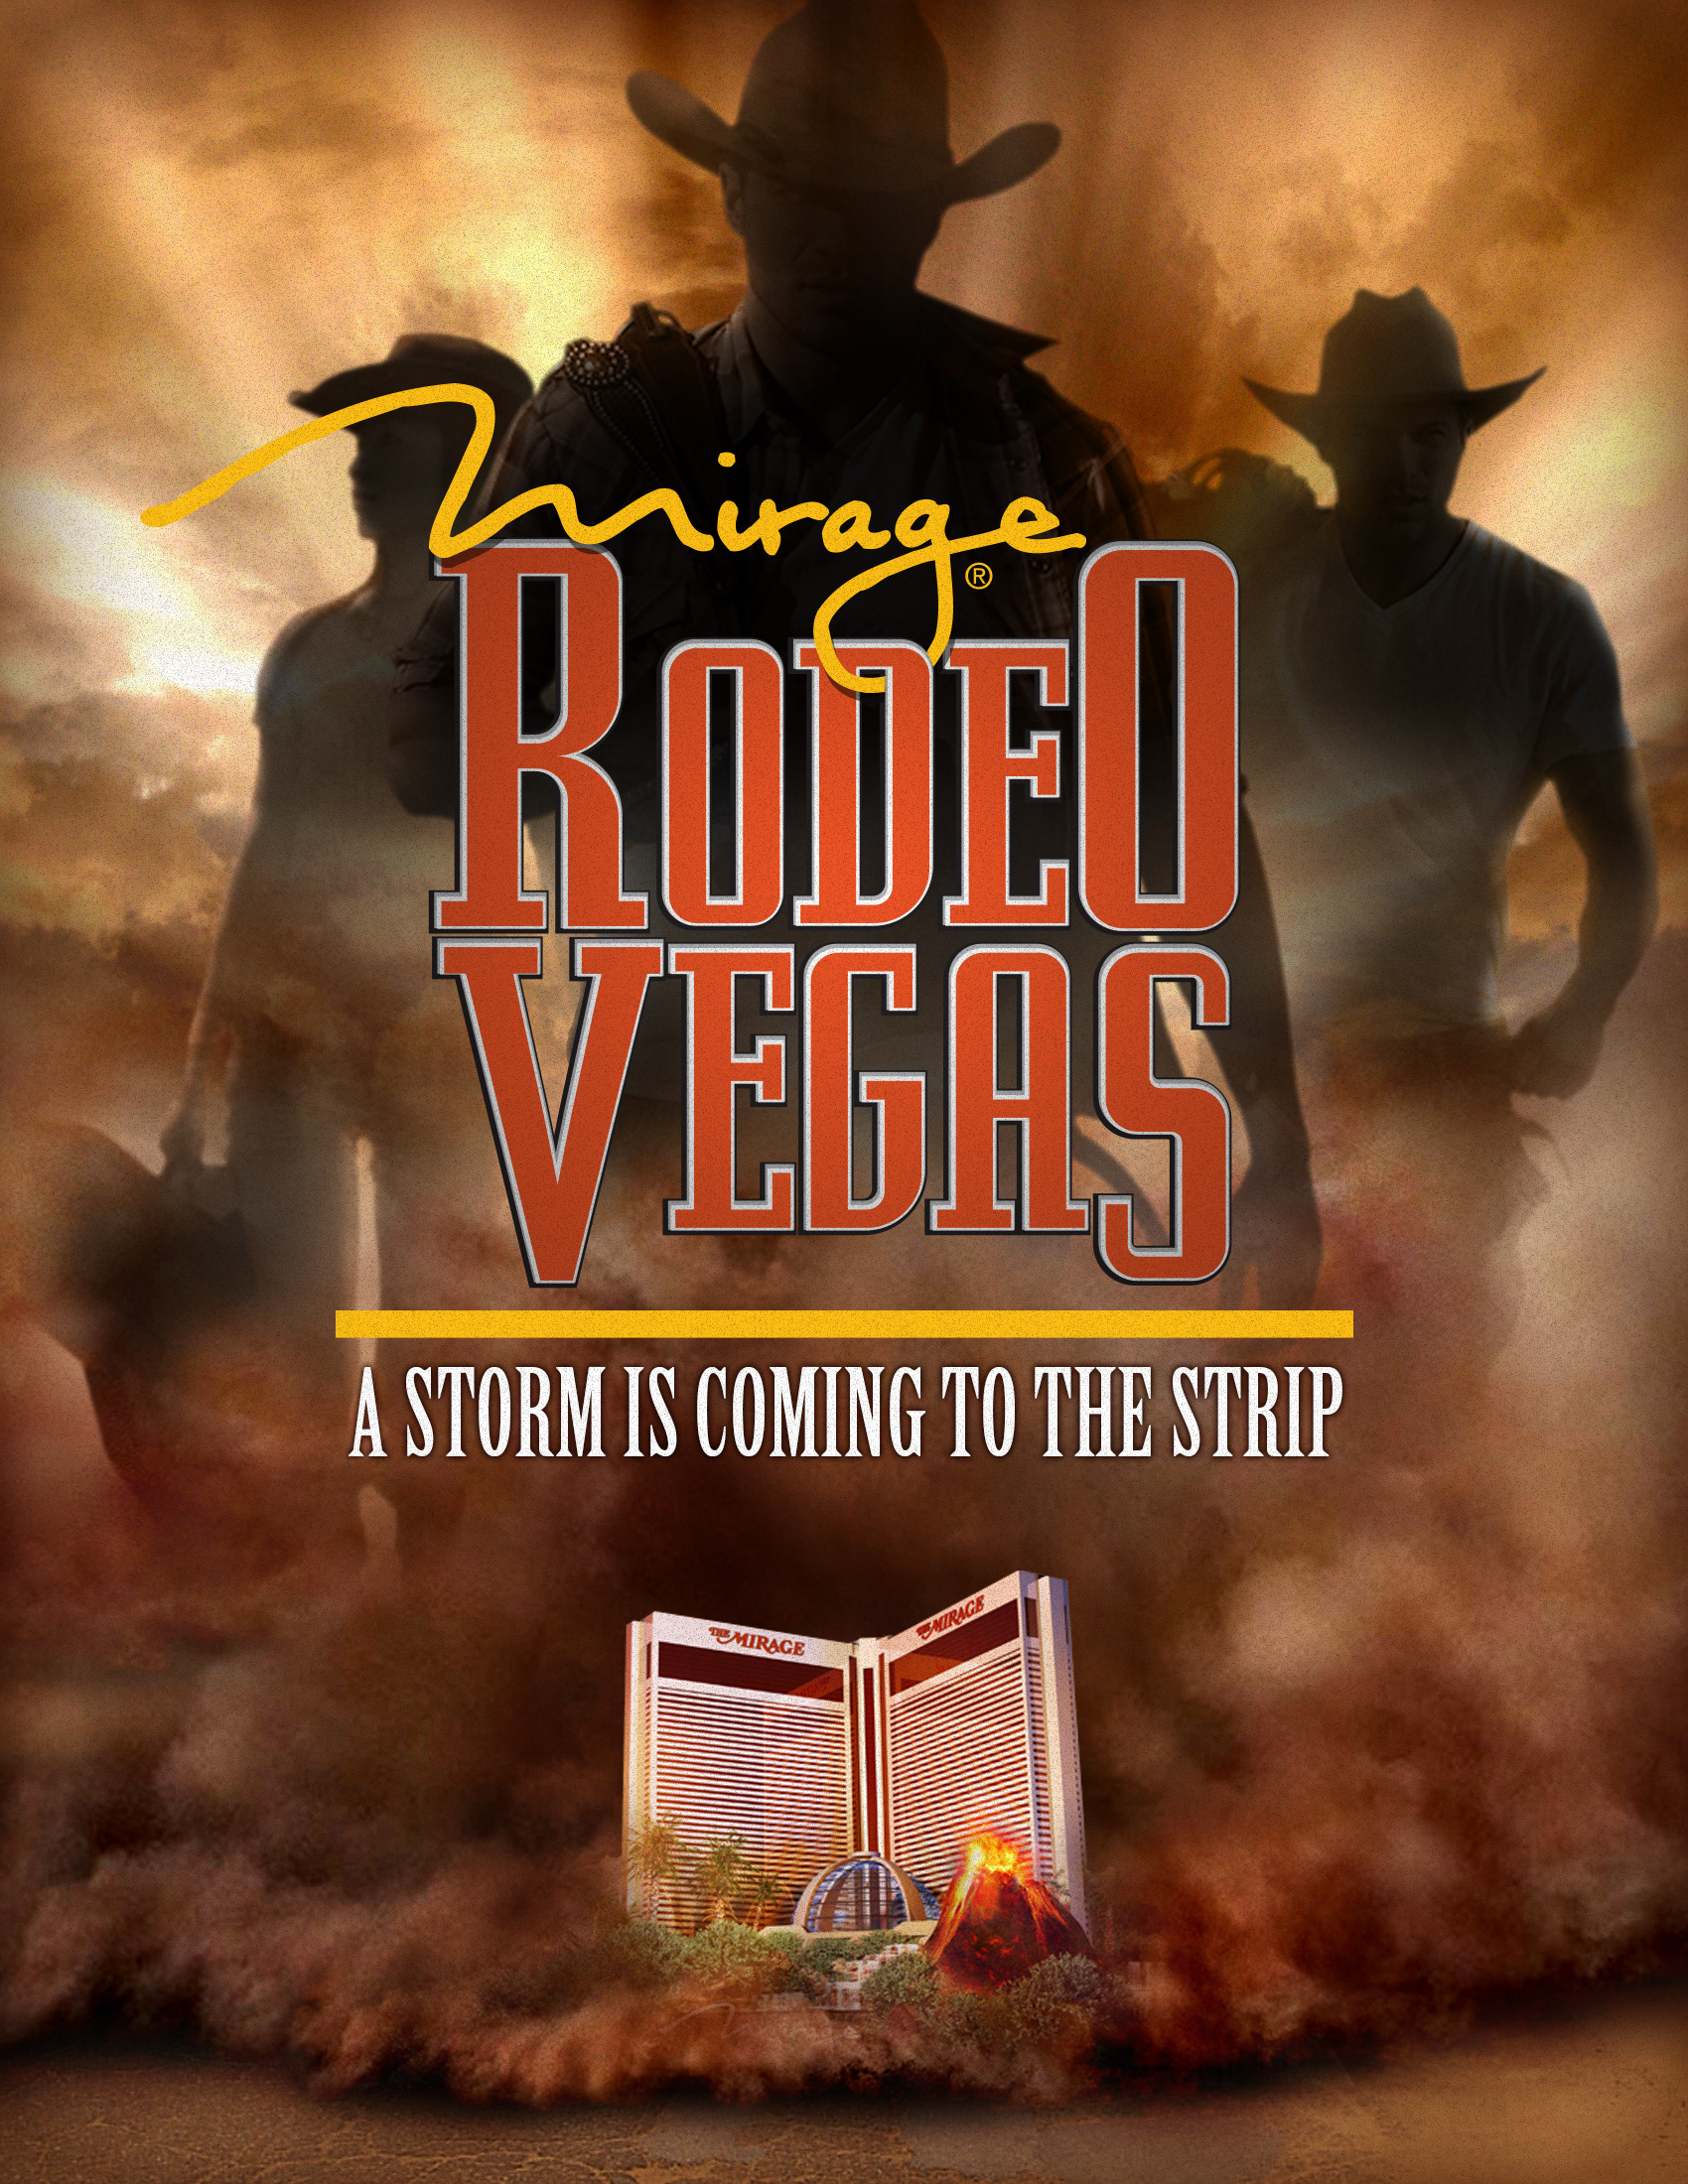 Adam Roop Rodeo Vegas